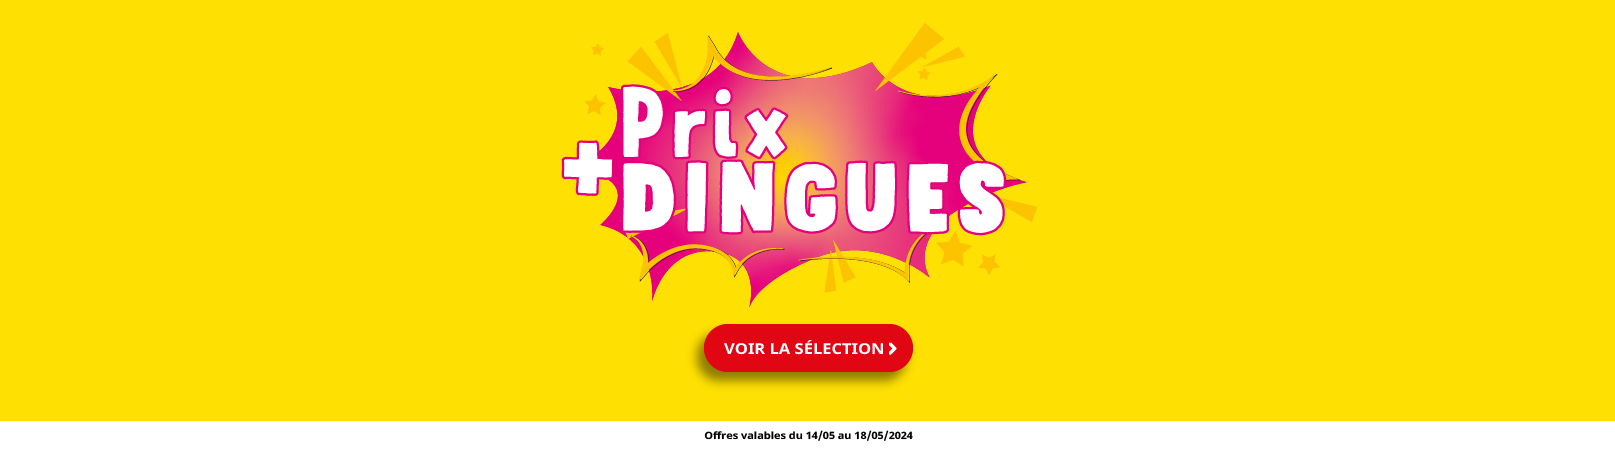 Prix Dingues